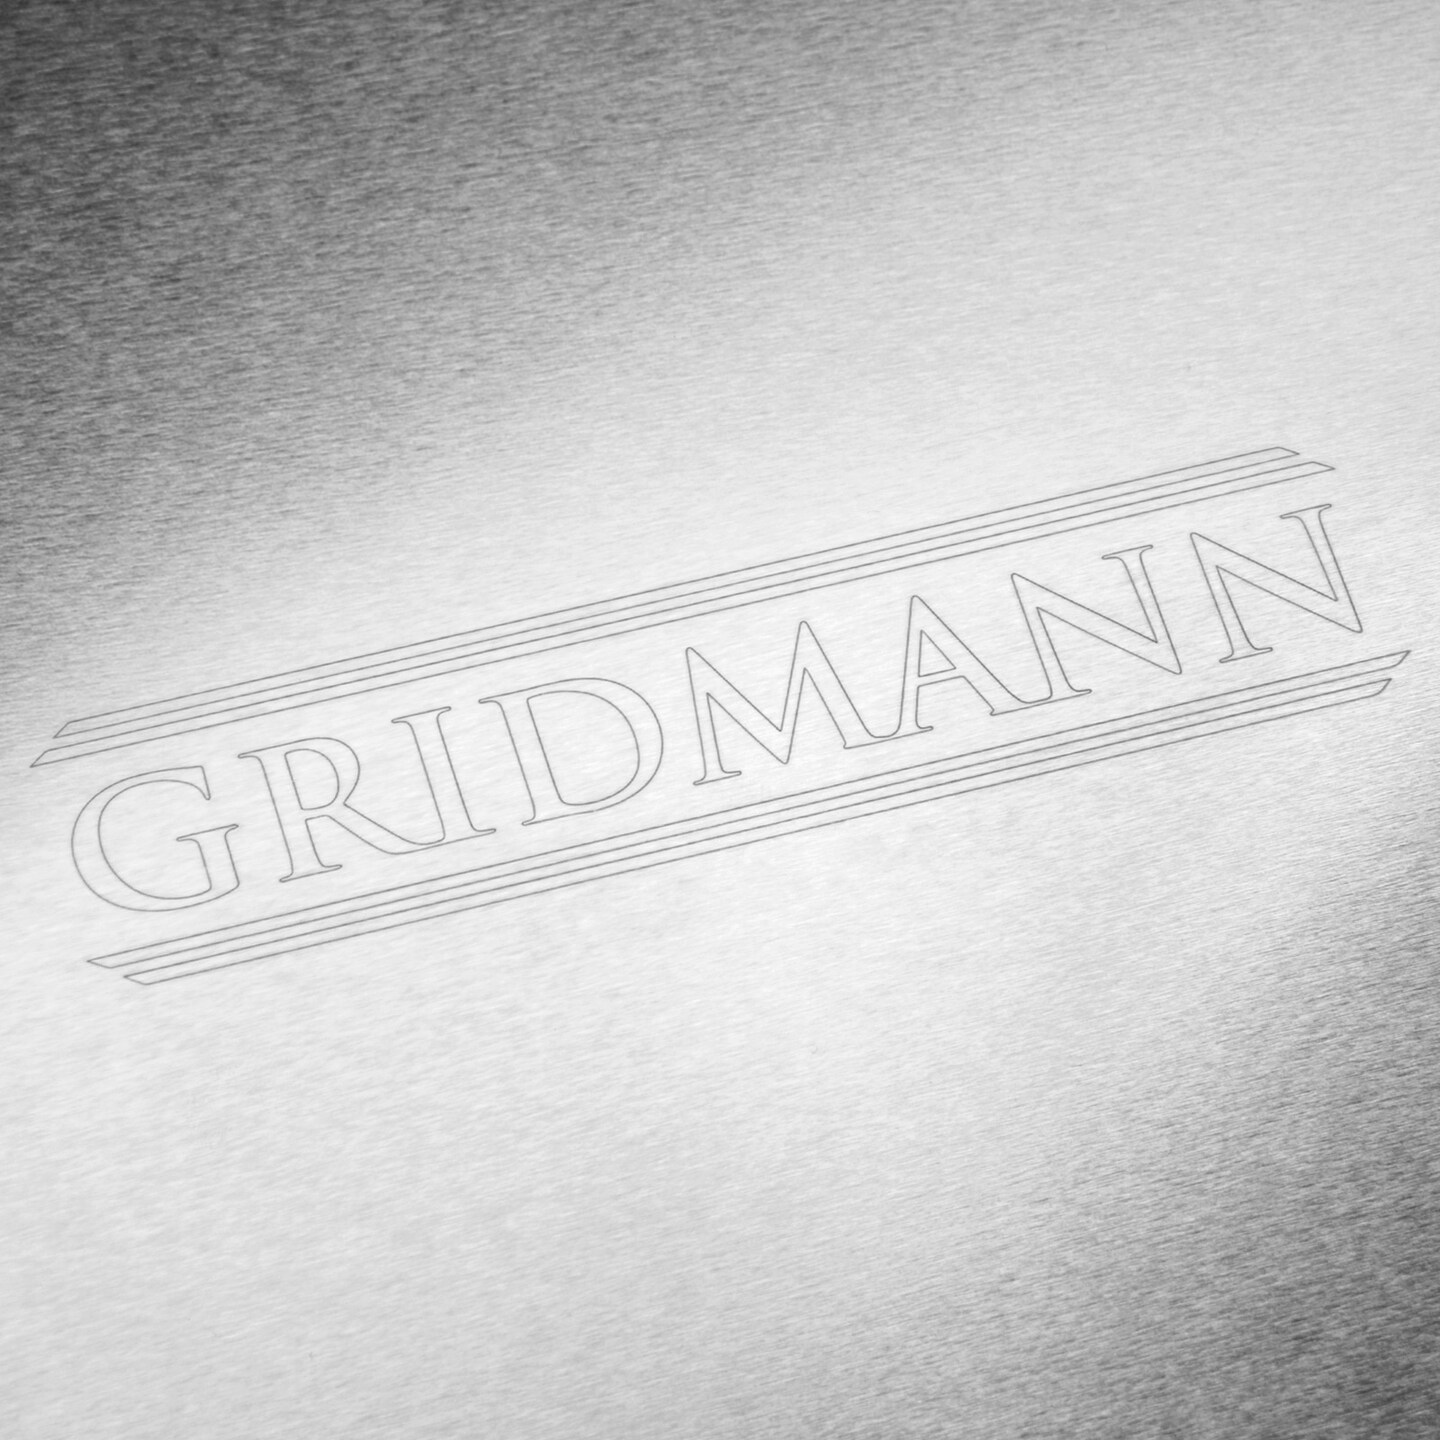  GRIDMANN 9 x 13 Commercial Grade Aluminum Cookie